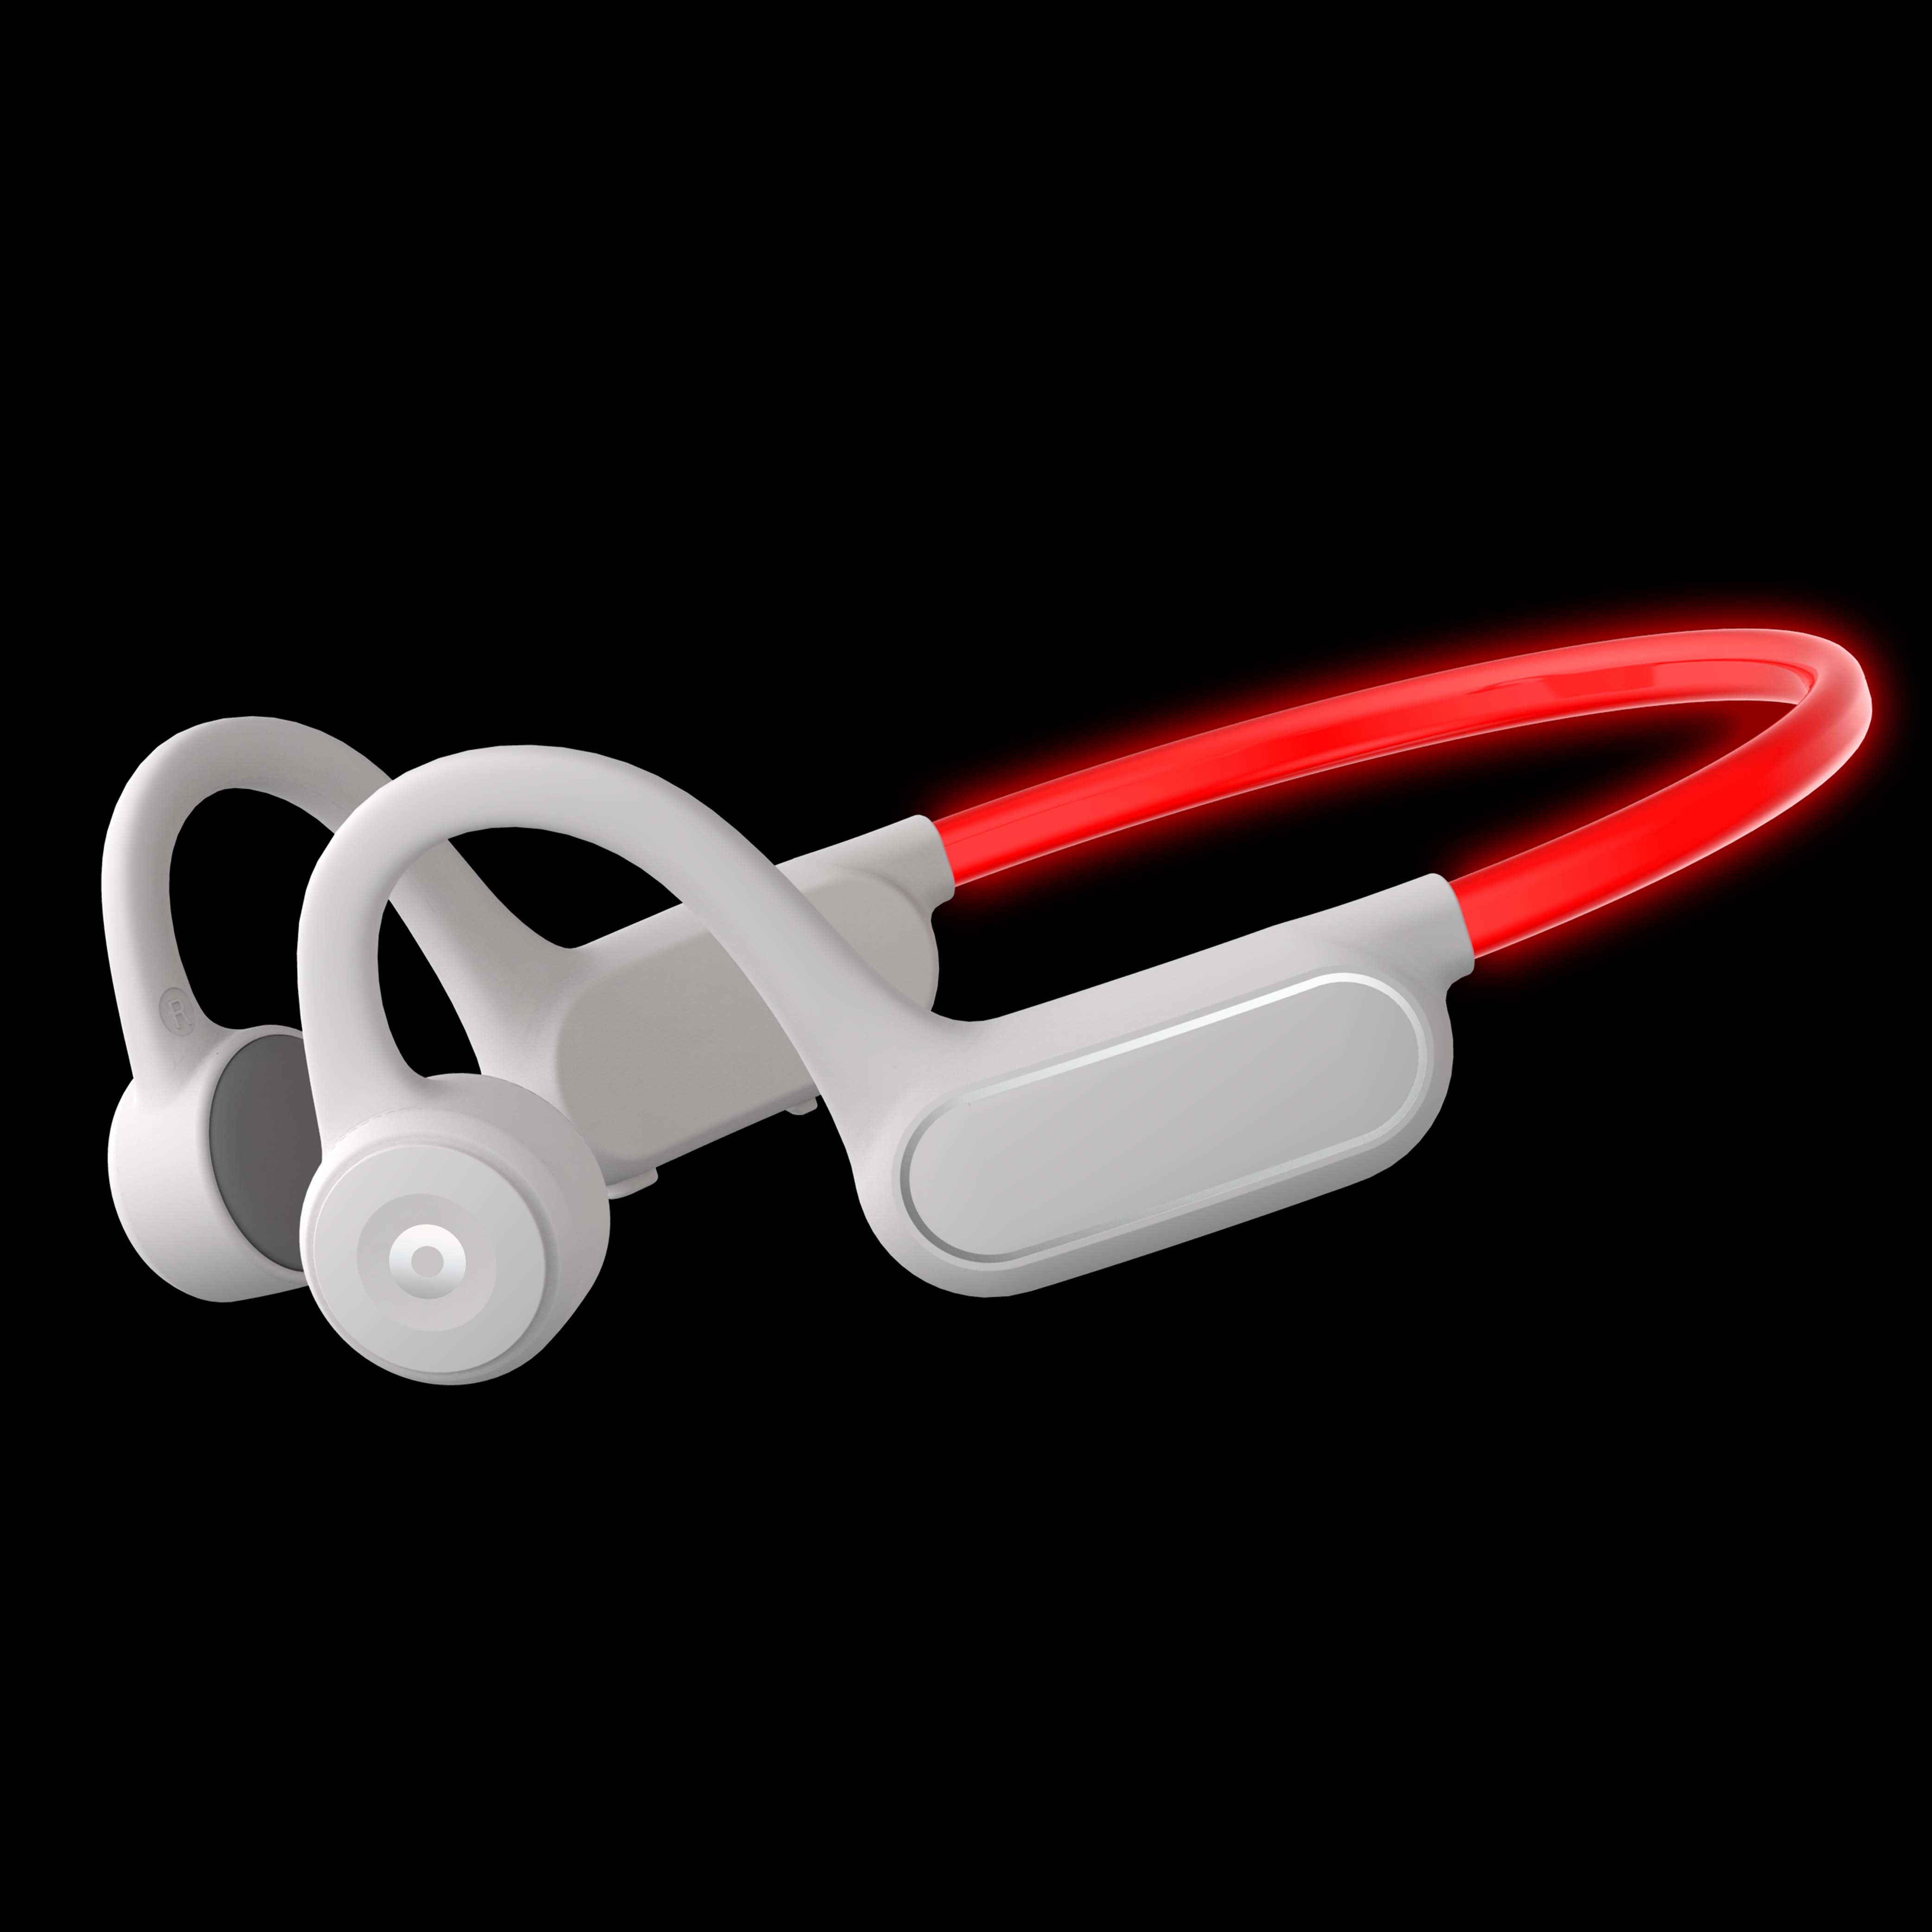 Open-Ear Luminous Headphone